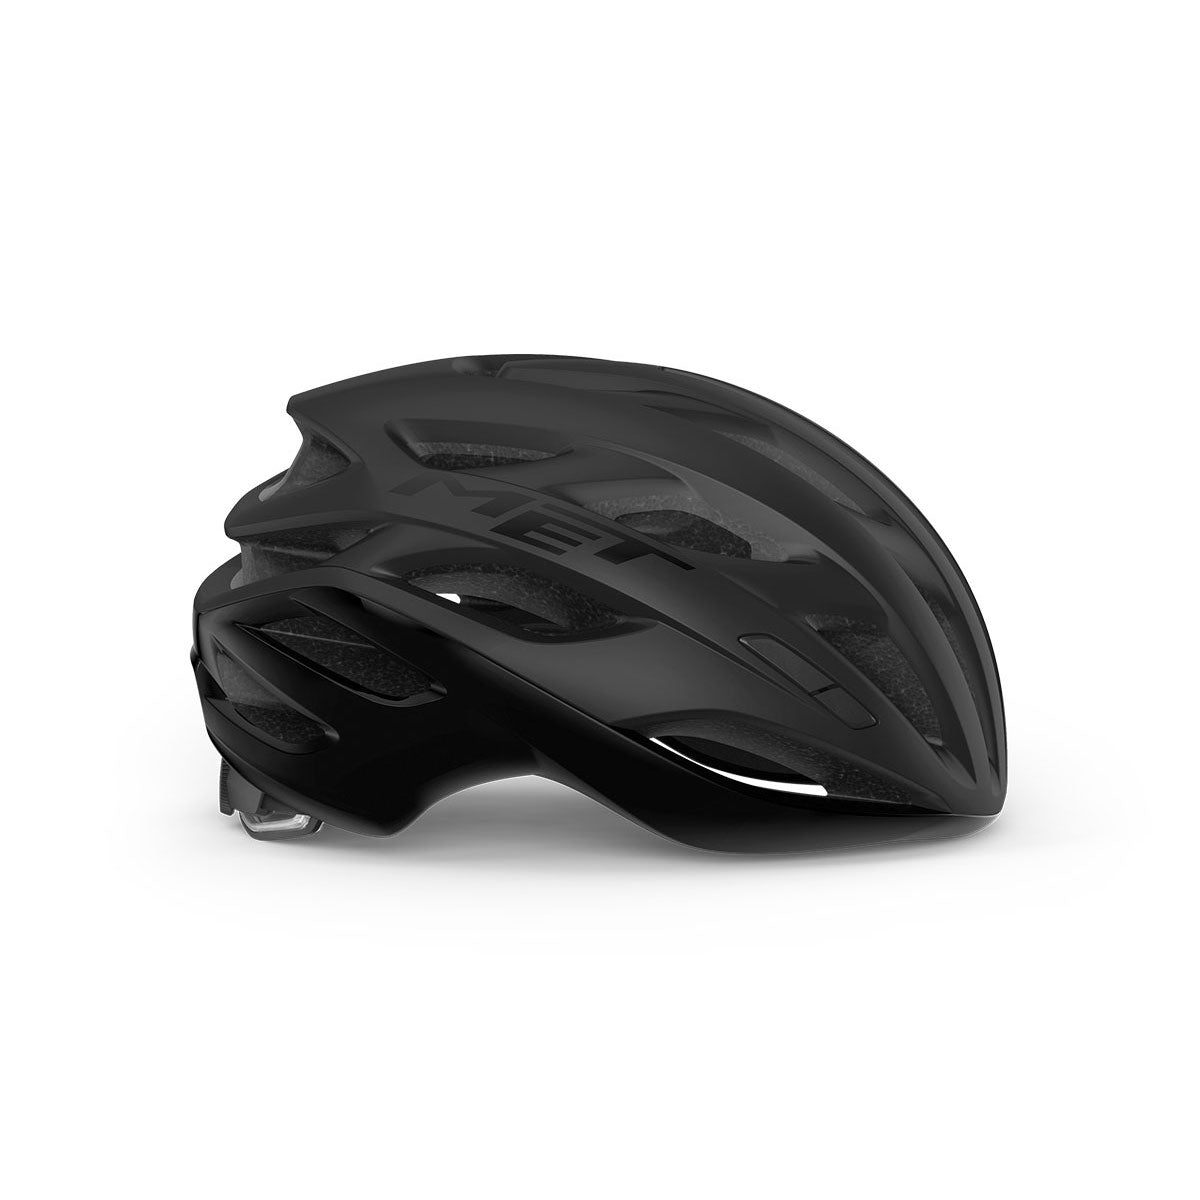 Estro Mips Road Helmet